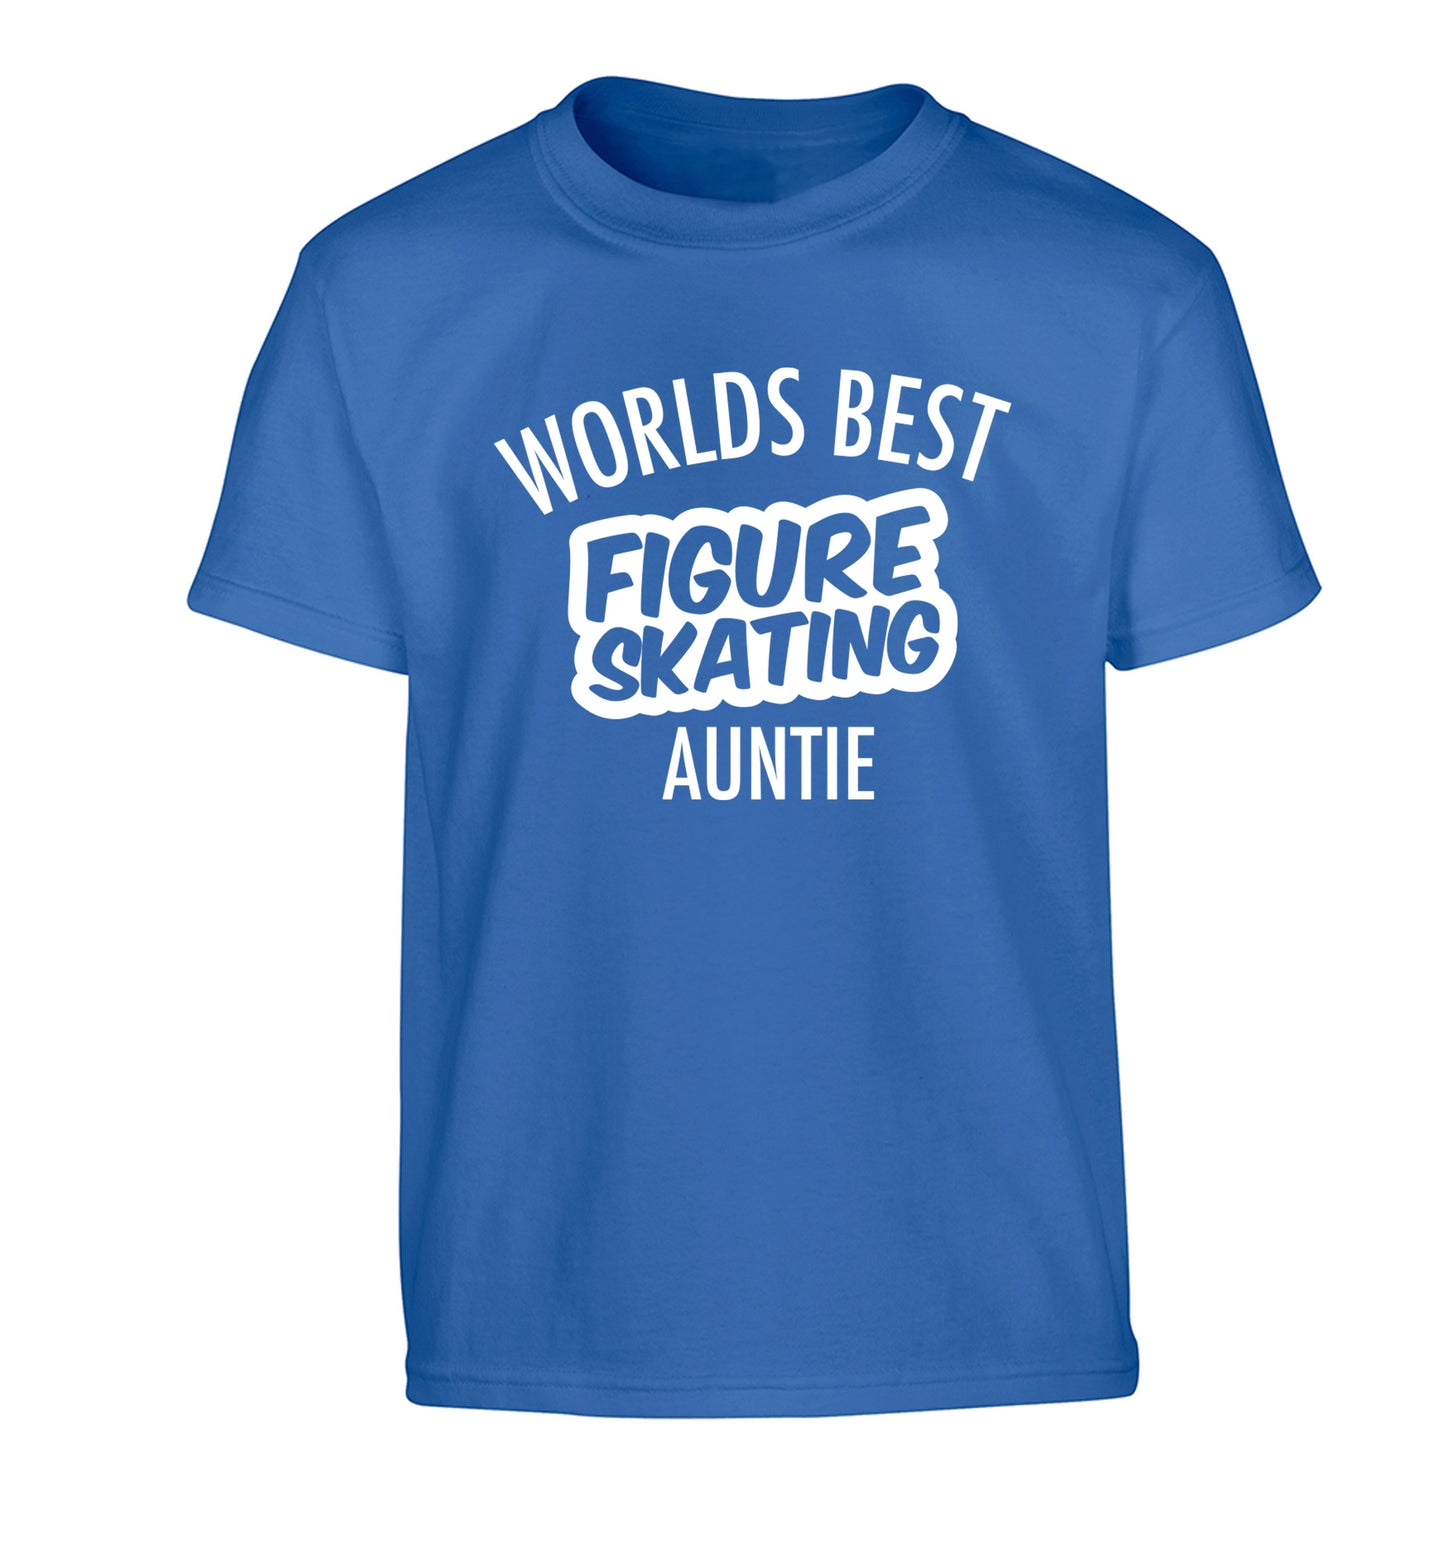 Worlds best figure skating auntie Children's blue Tshirt 12-14 Years